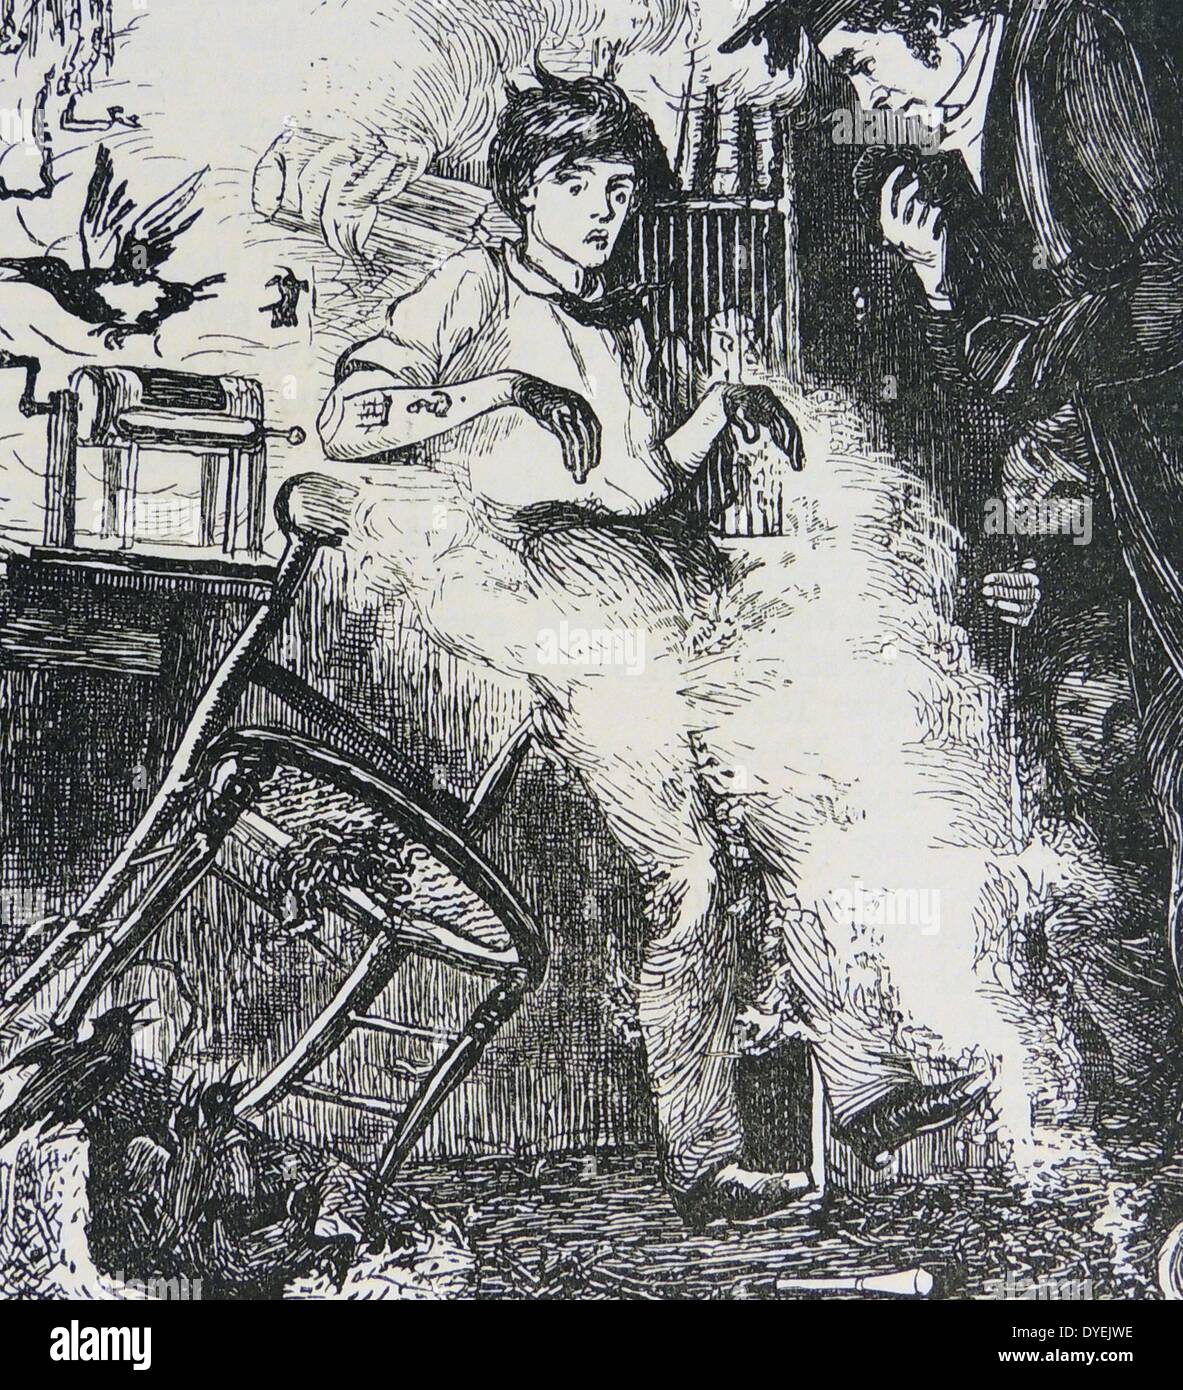 Martin, bekannt als Verrückter, besuchte in seiner Studie von Dr. Arnold, genau wie sein Experiment explodiert. Abbildung für 1869 Ausgabe von ''Tom Brown's Schooldays von Thomas Hughes. Originalausgabe 1857. Stockfoto